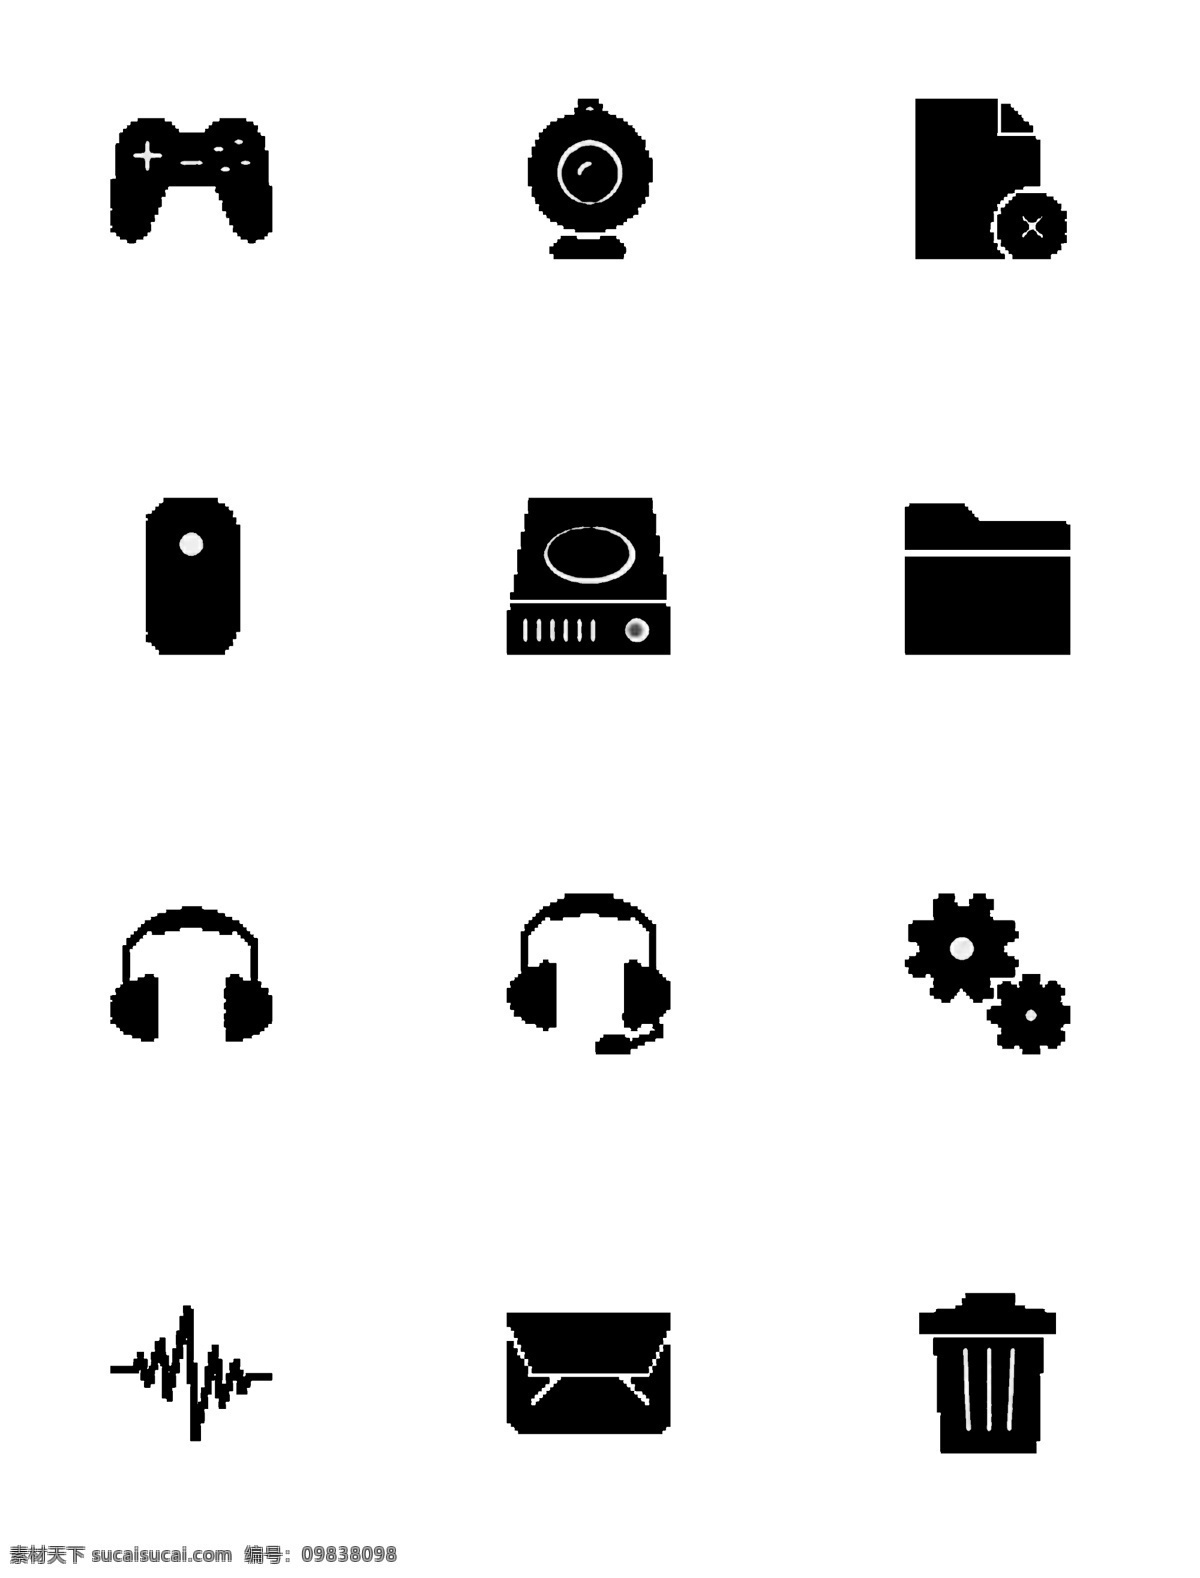 十 二 简单生活 中 常见 图标素材 十二个 简单 生活中 图标 游戏 手柄 文件夹 耳机 设置 免抠 png格式